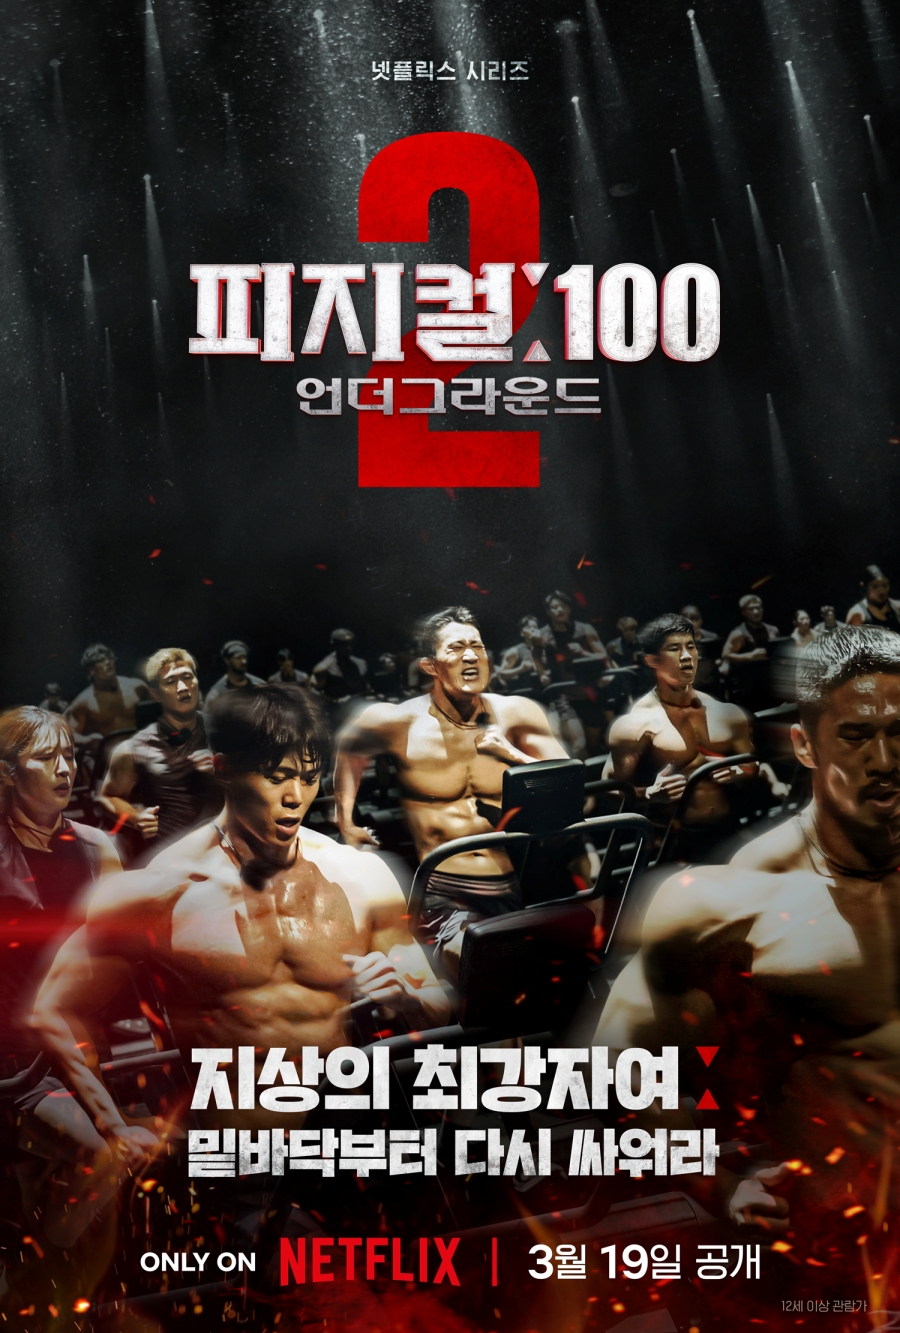 '피지컬100 시즌2', 오는 3월 19일 공개 확정…티저 포스터 공개